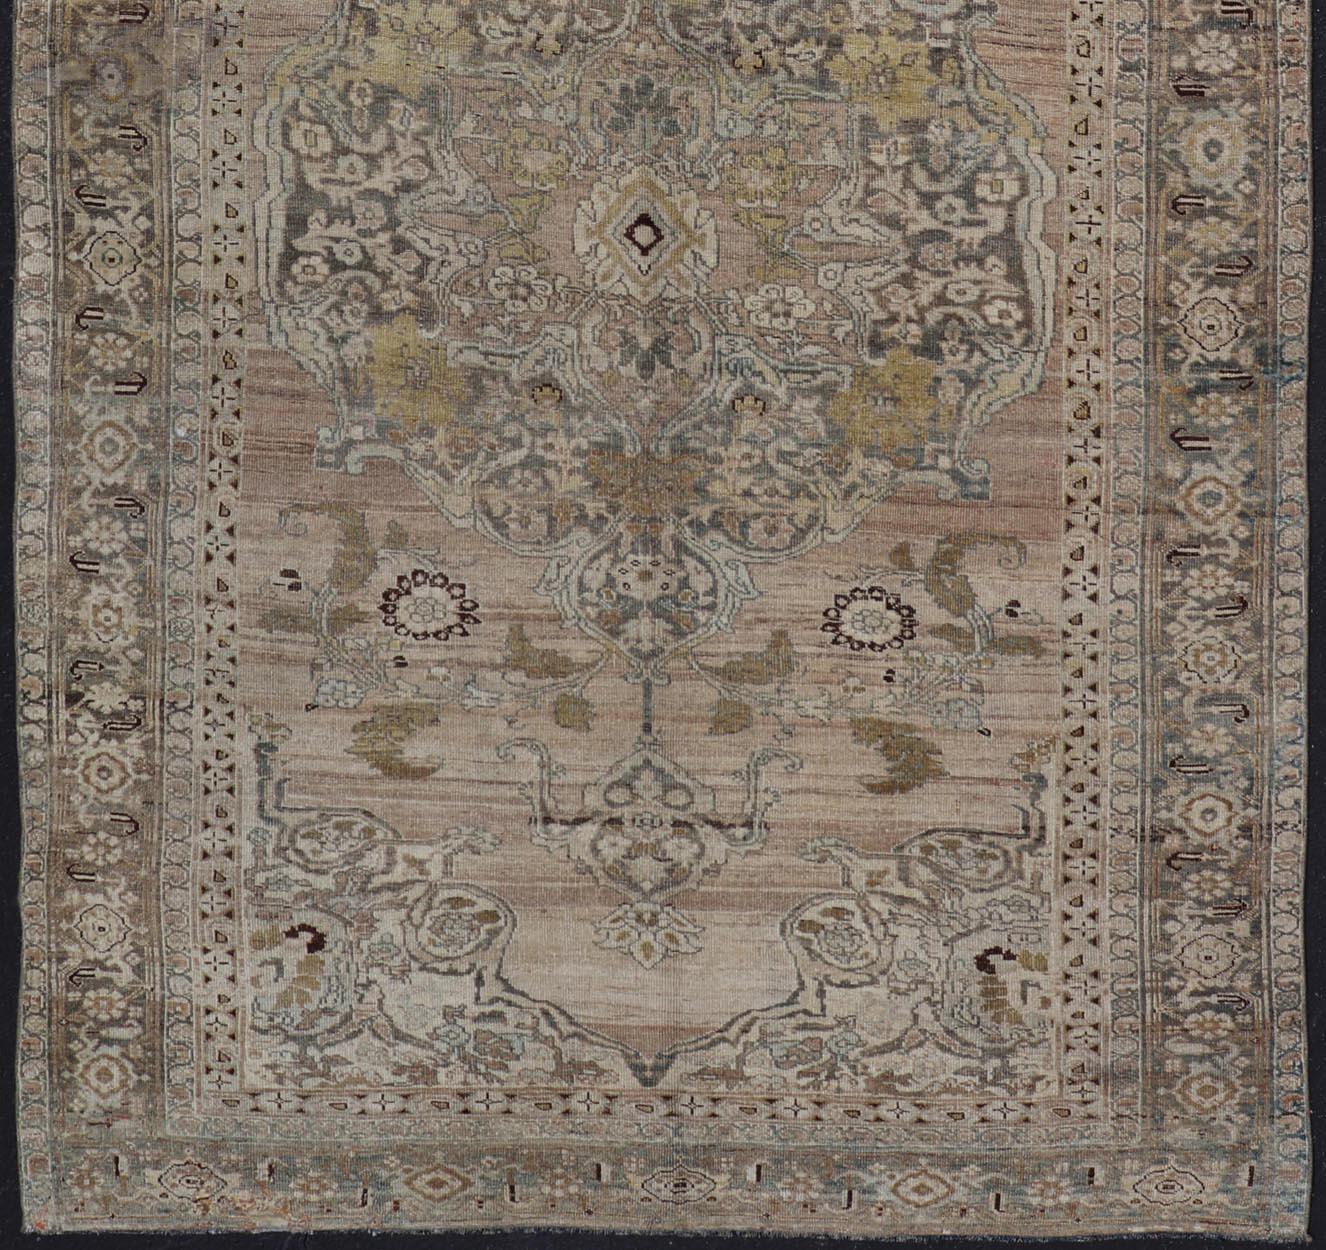  Antique Persian Bidjar Rug with Large Floral Medallion and Vining Floral 1